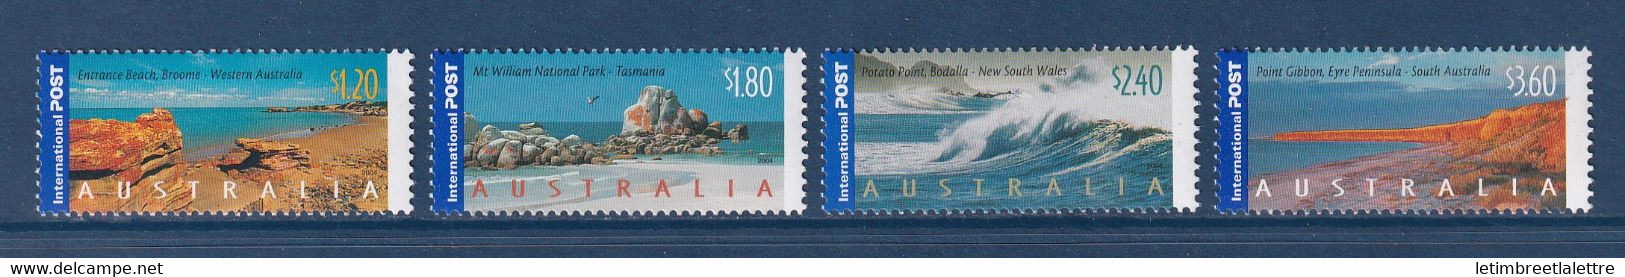 ⭐ Australie - YT N° 2225 à 2228 ** - Neuf Sans Charnière - 2004 ⭐ - Mint Stamps